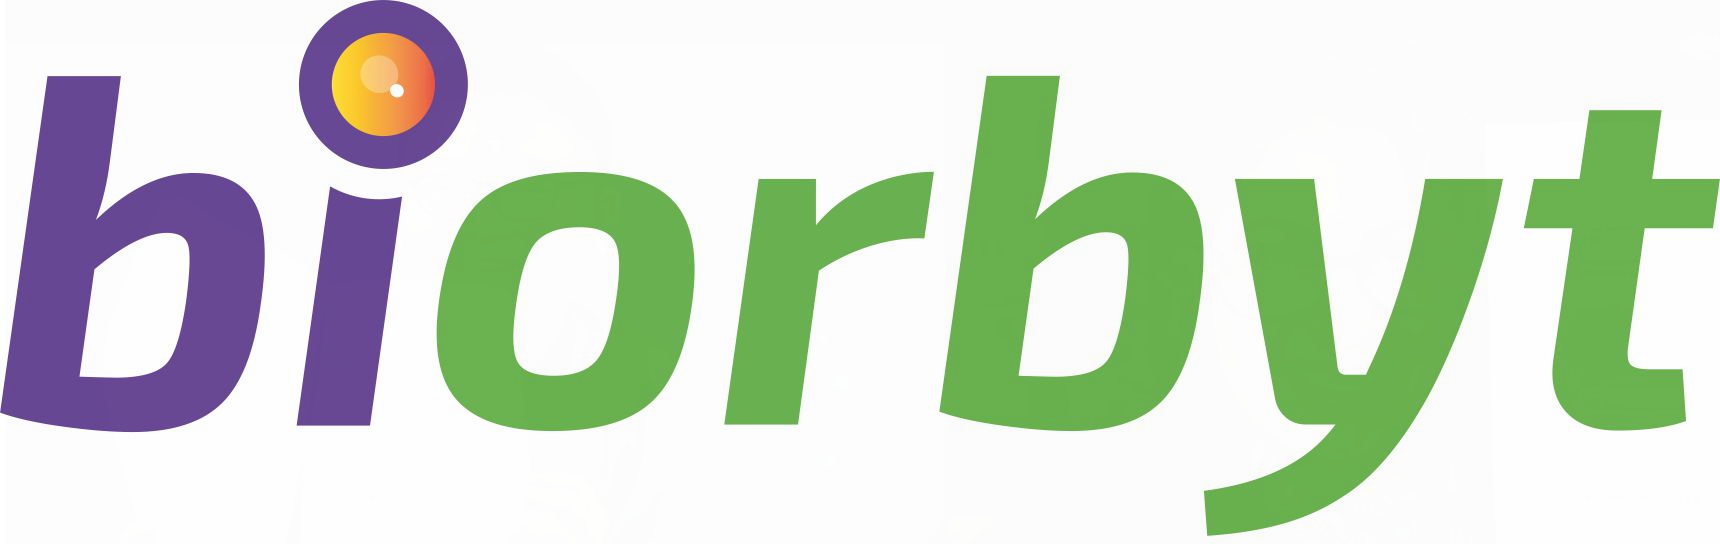 biorbyt-wo-res-logo-pa gen okenn strapline